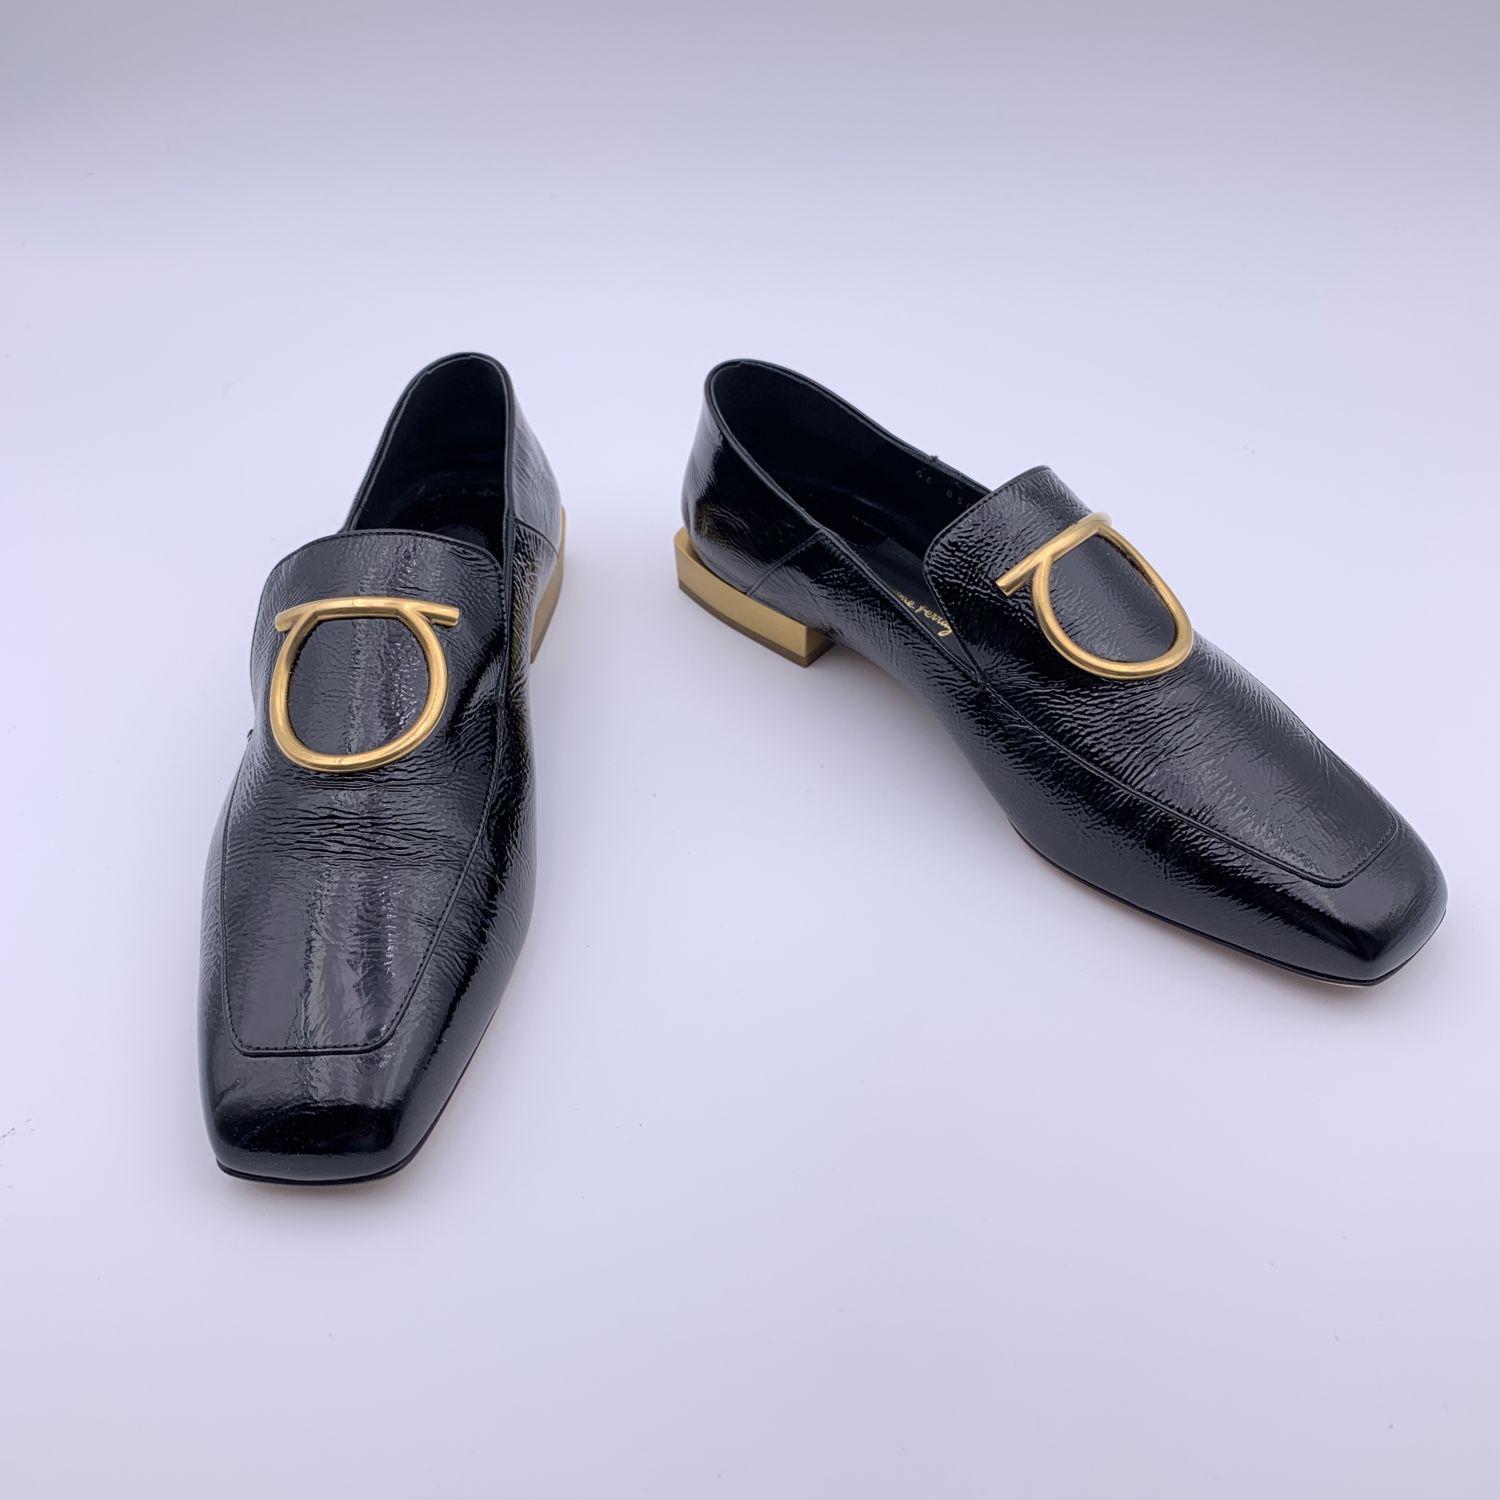 Salvatore Ferragamo Black Patent Leather Lana Loafers Size 7C 37.5 C In New Condition In Rome, Rome